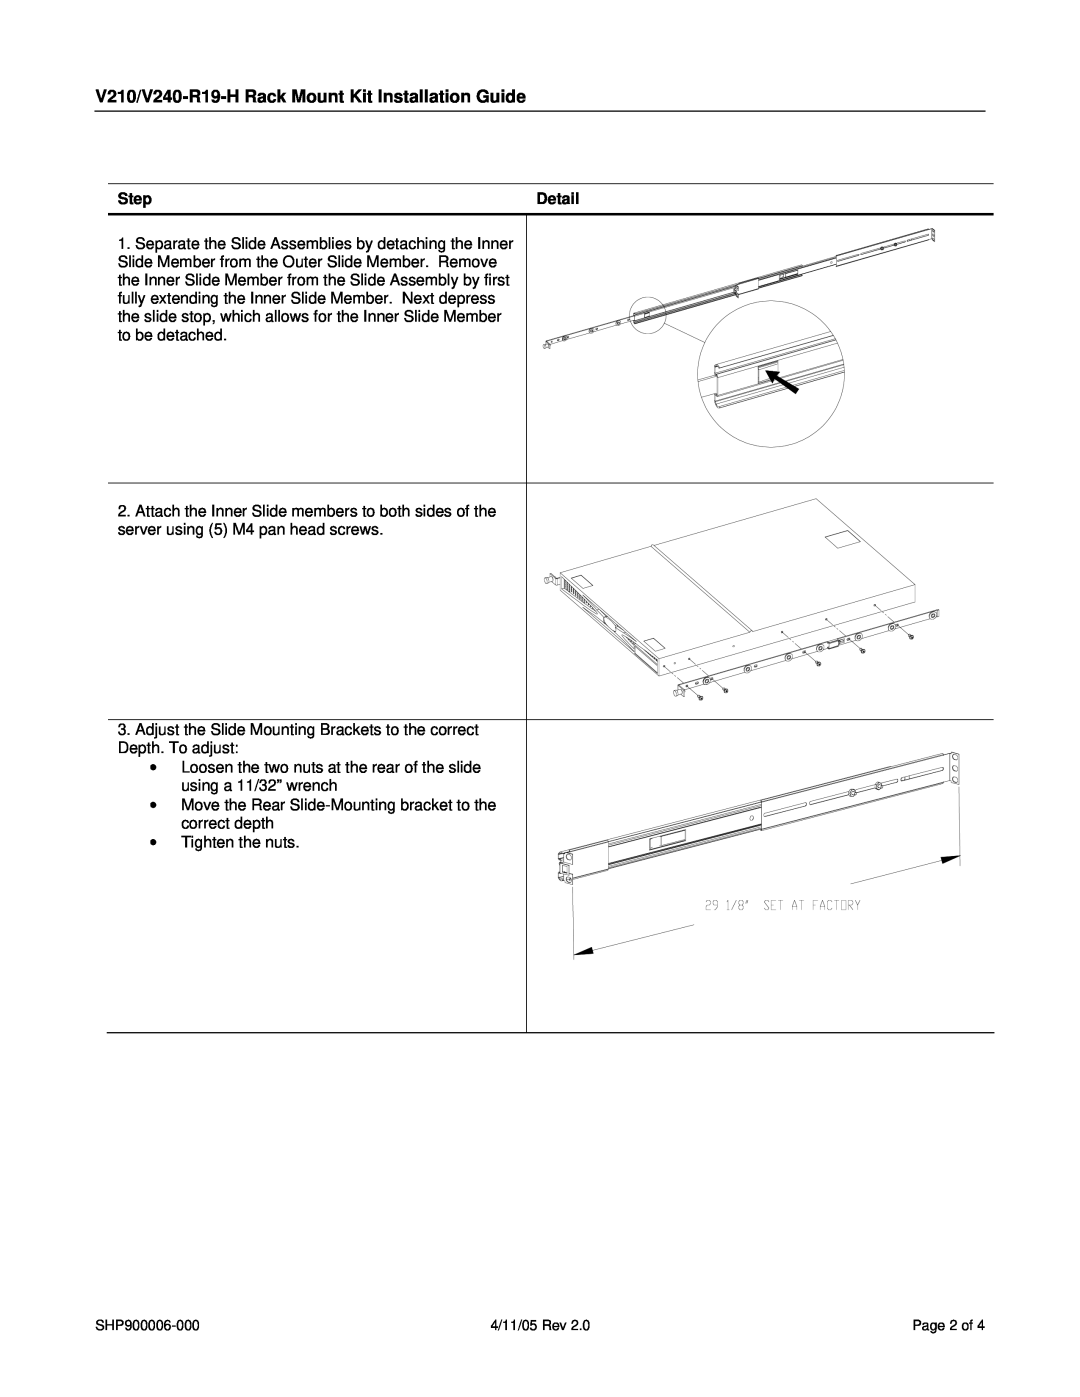 SharkRack manual V210/V240-R19-HRack Mount Kit Installation Guide, Step, Detail 